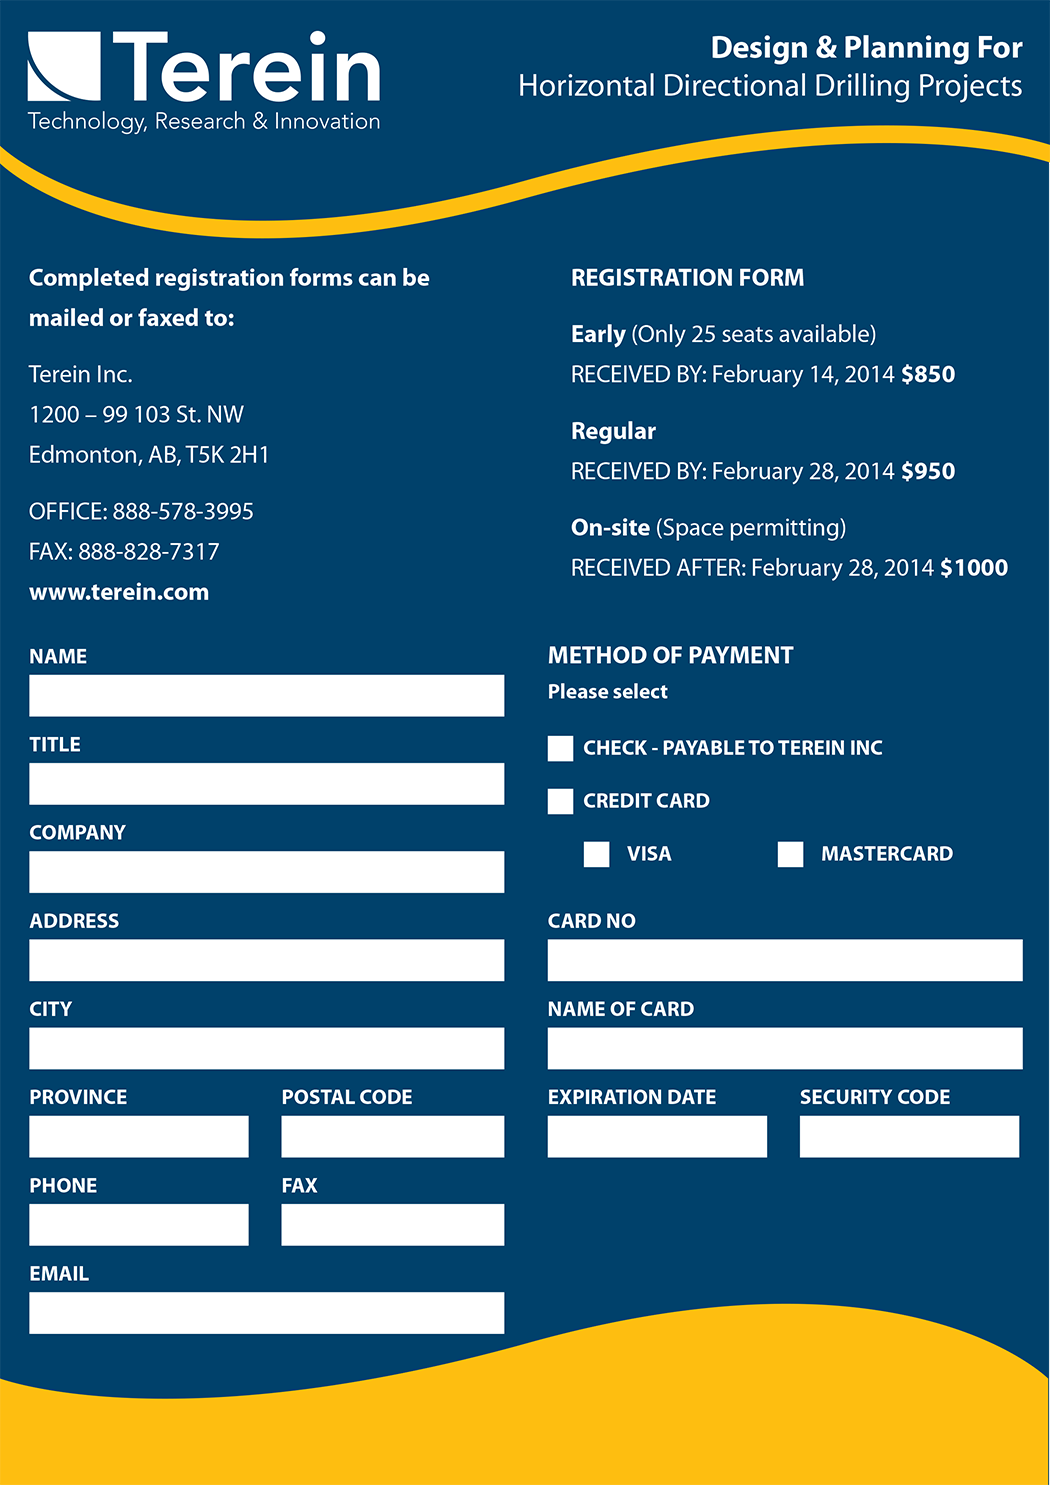 Registration Form for Terein